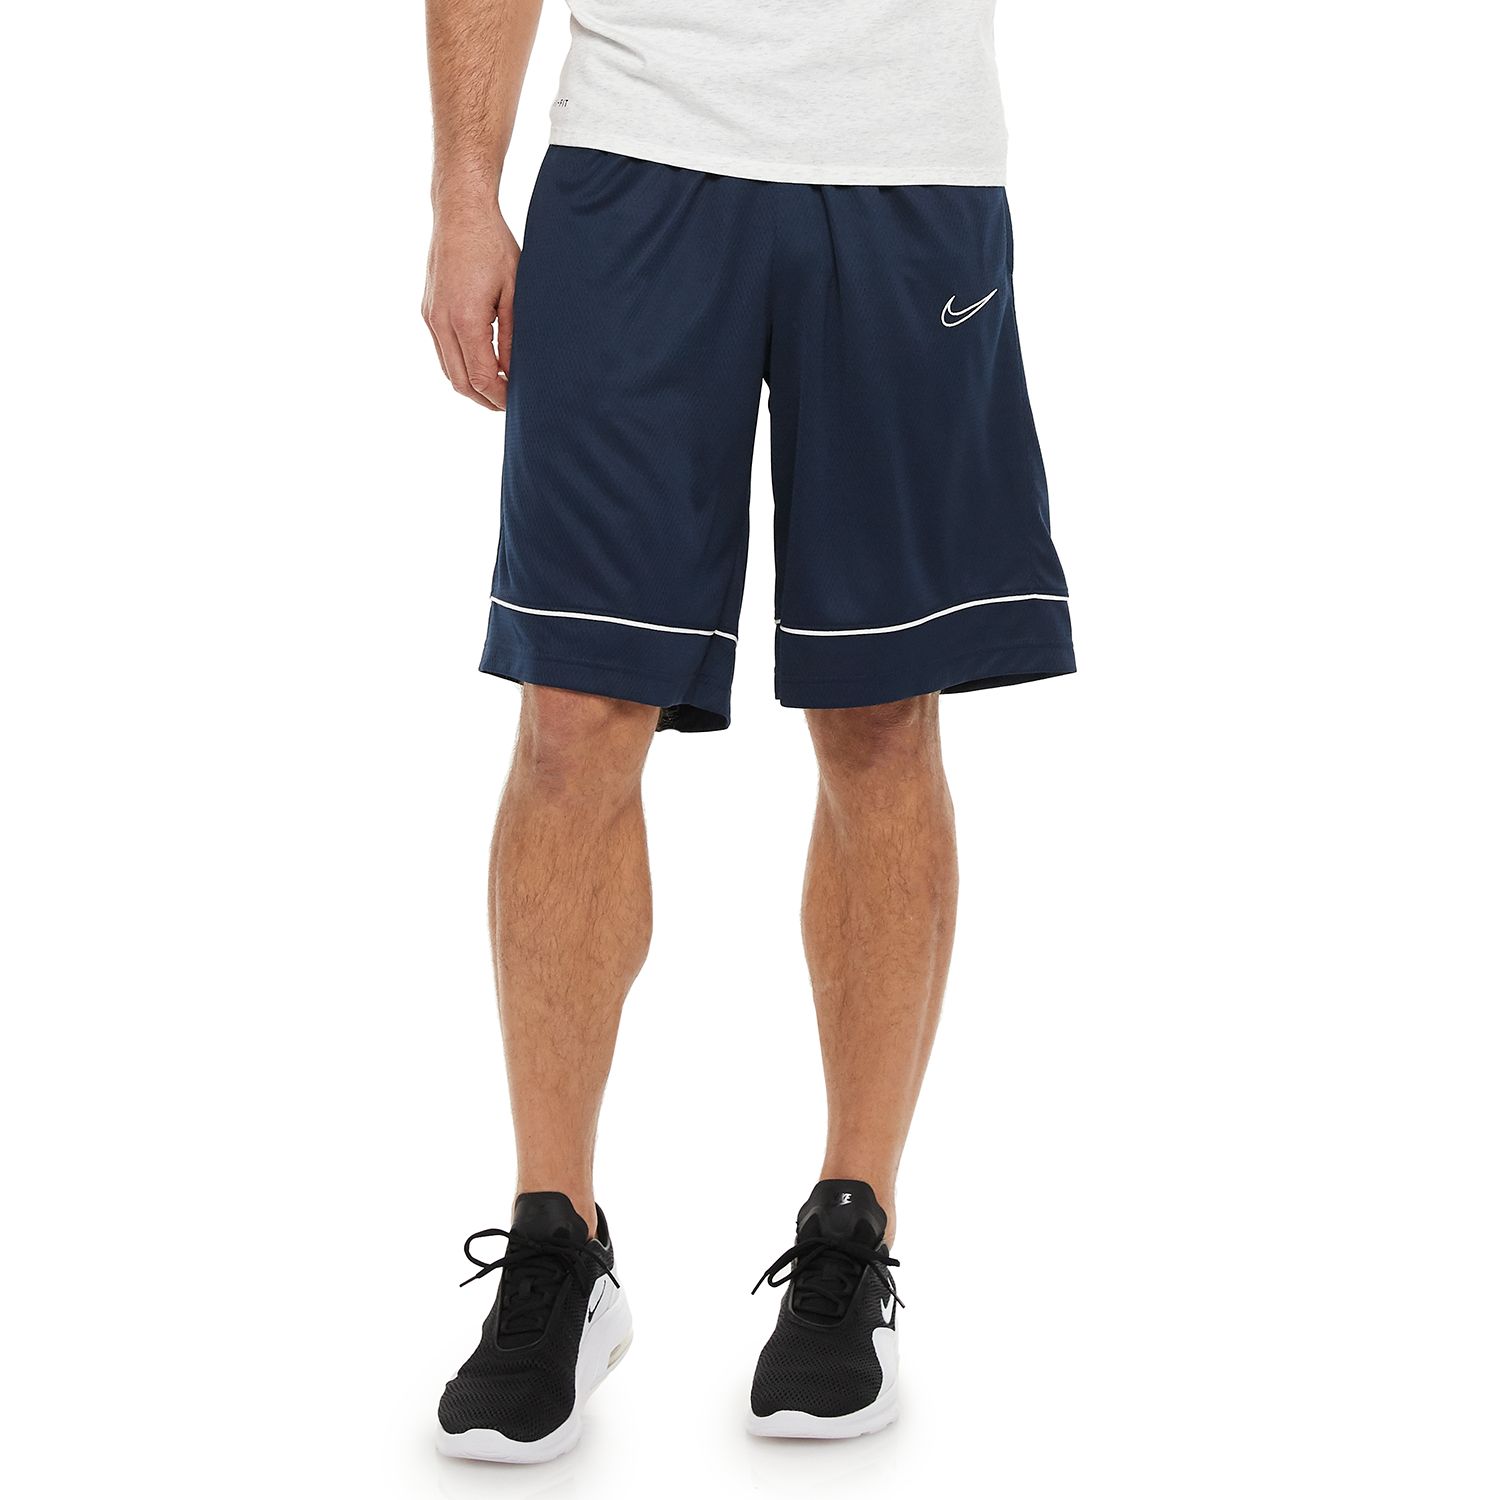 mens basketball shorts kohls